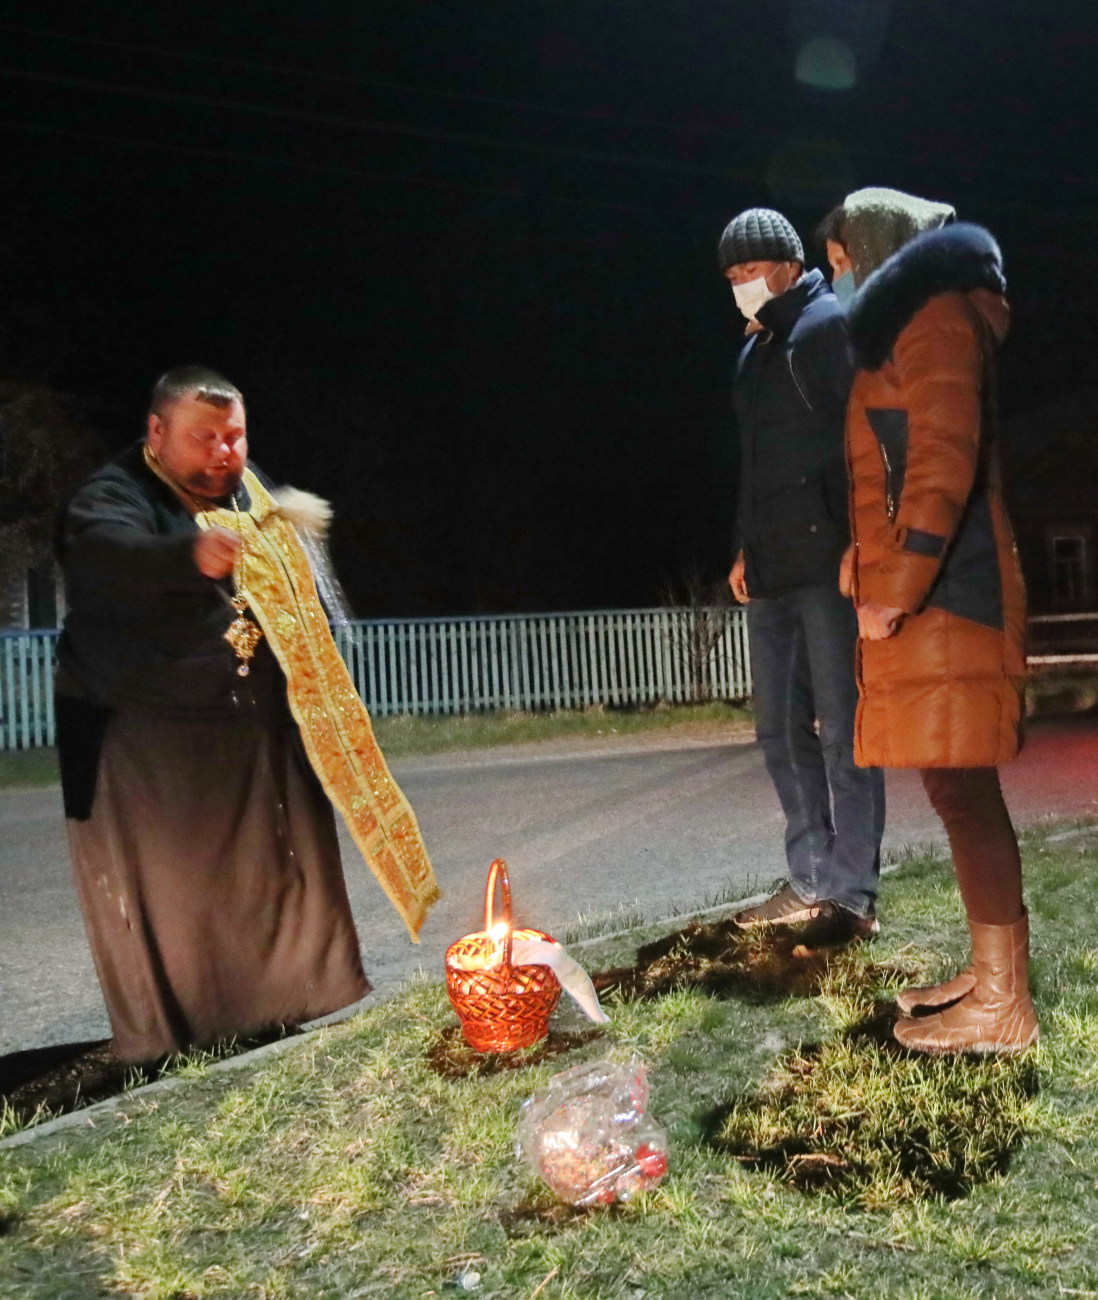 Пасха во время карантина: Священники святили паски на дому